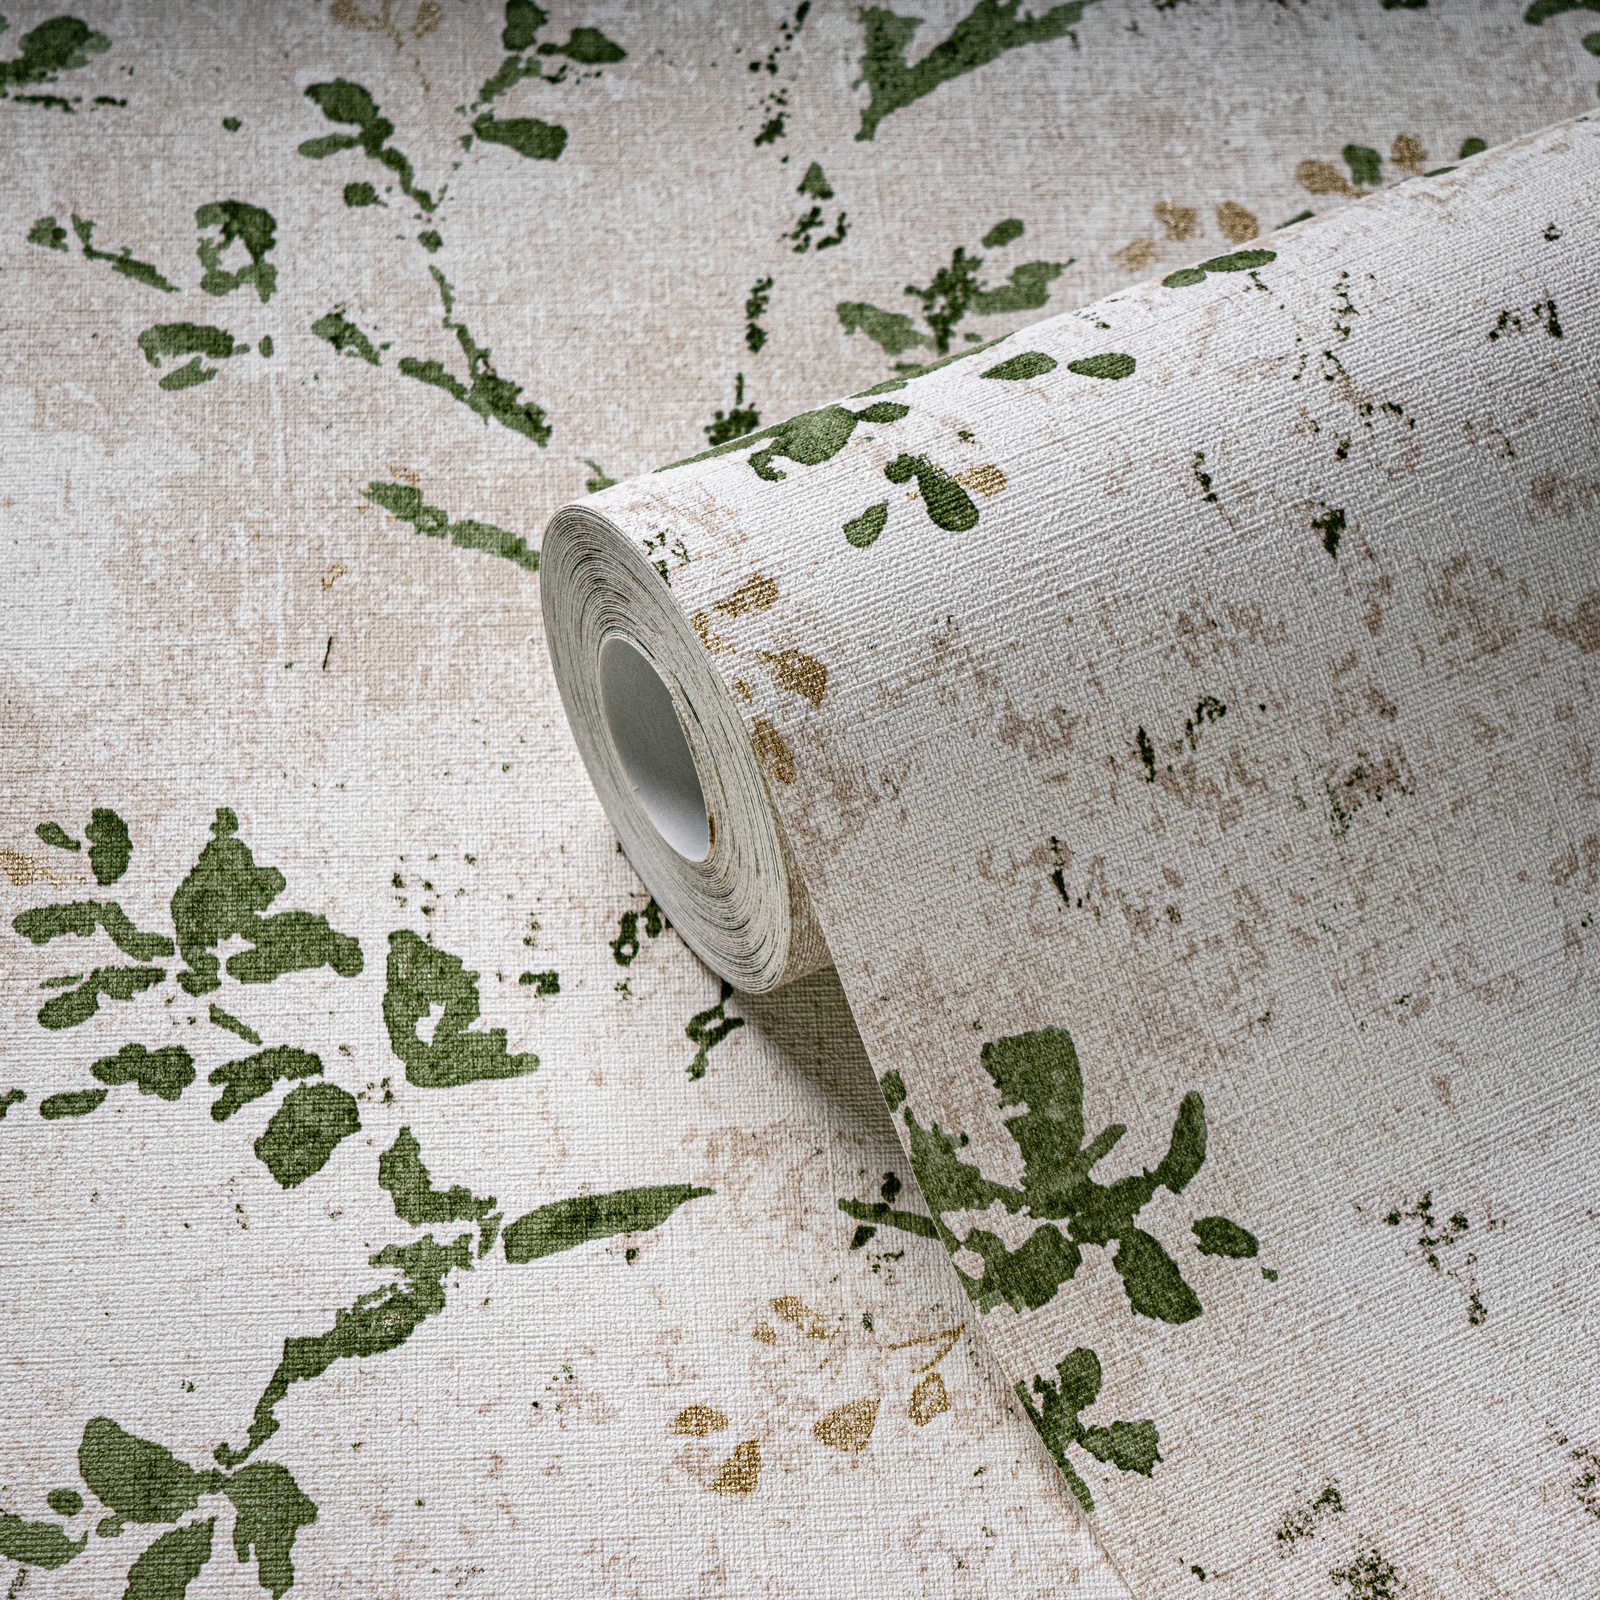             papier peint en papier intissé avec motifs floraux ludiques - beige, vert, or
        